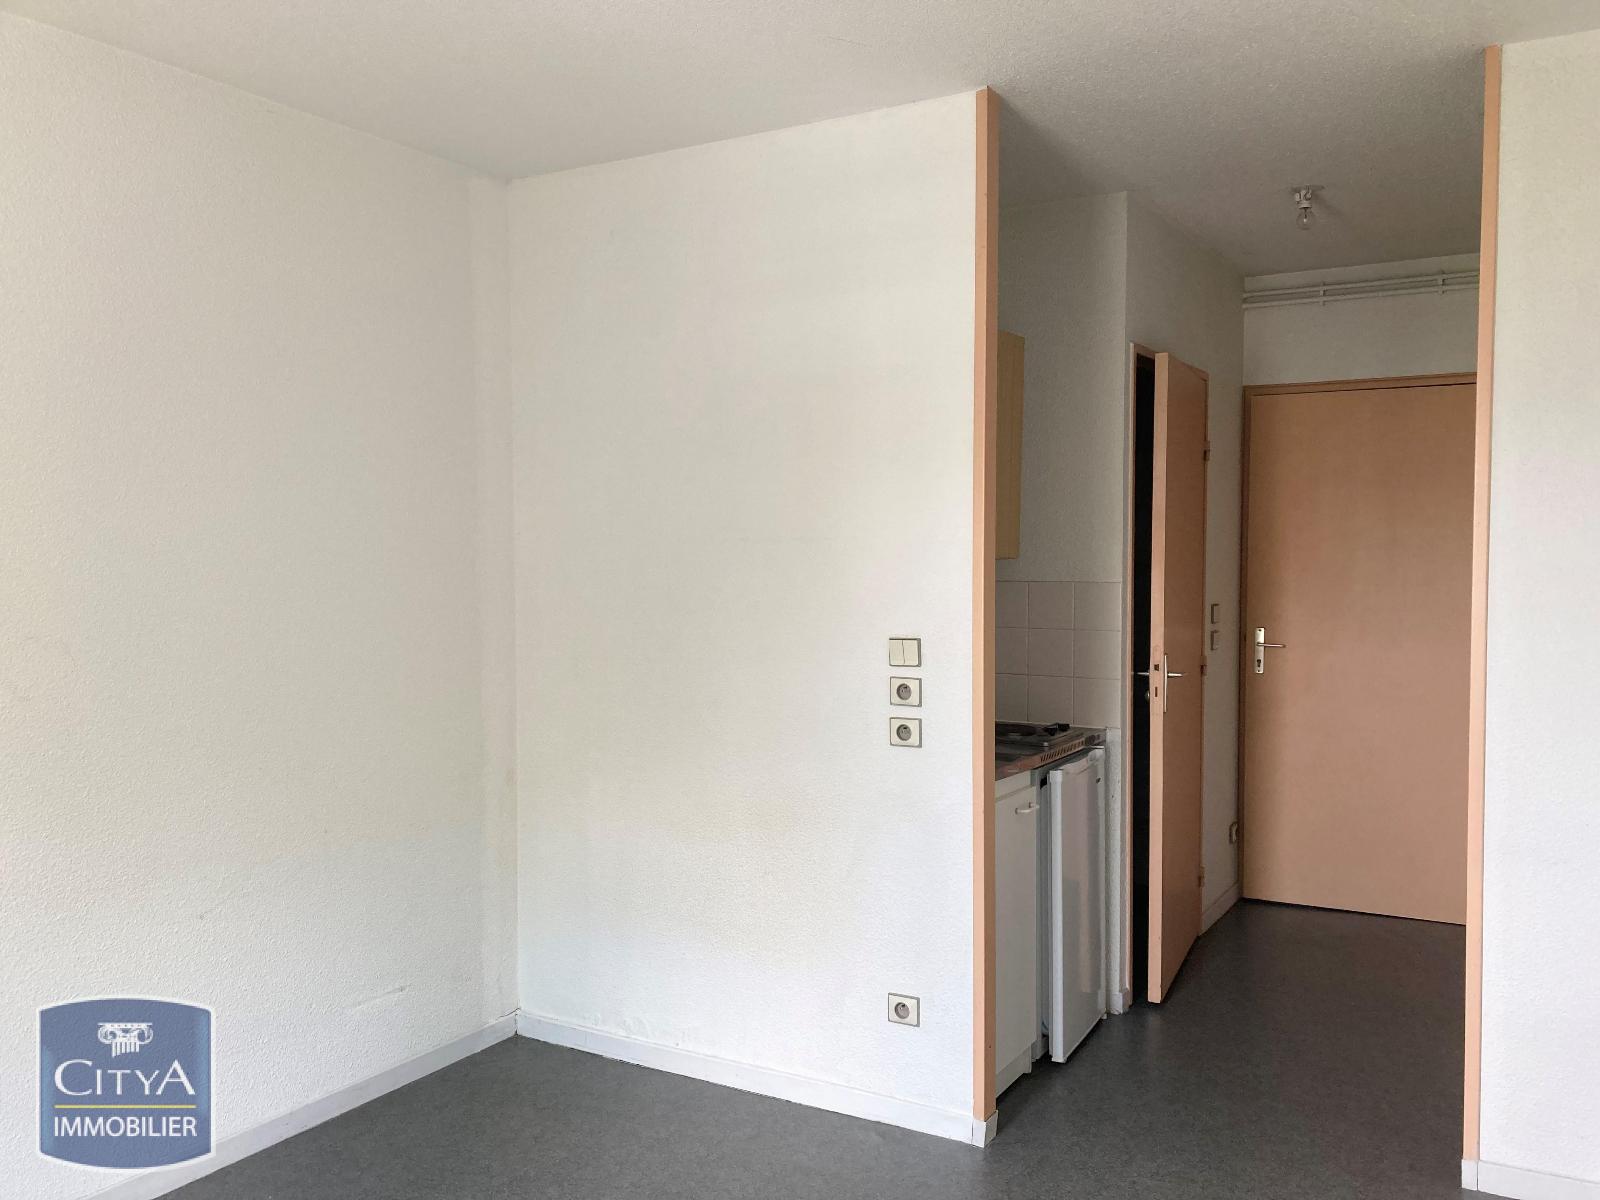 Appartement 1 pièce - 18m² - CLERMONT FERRAND